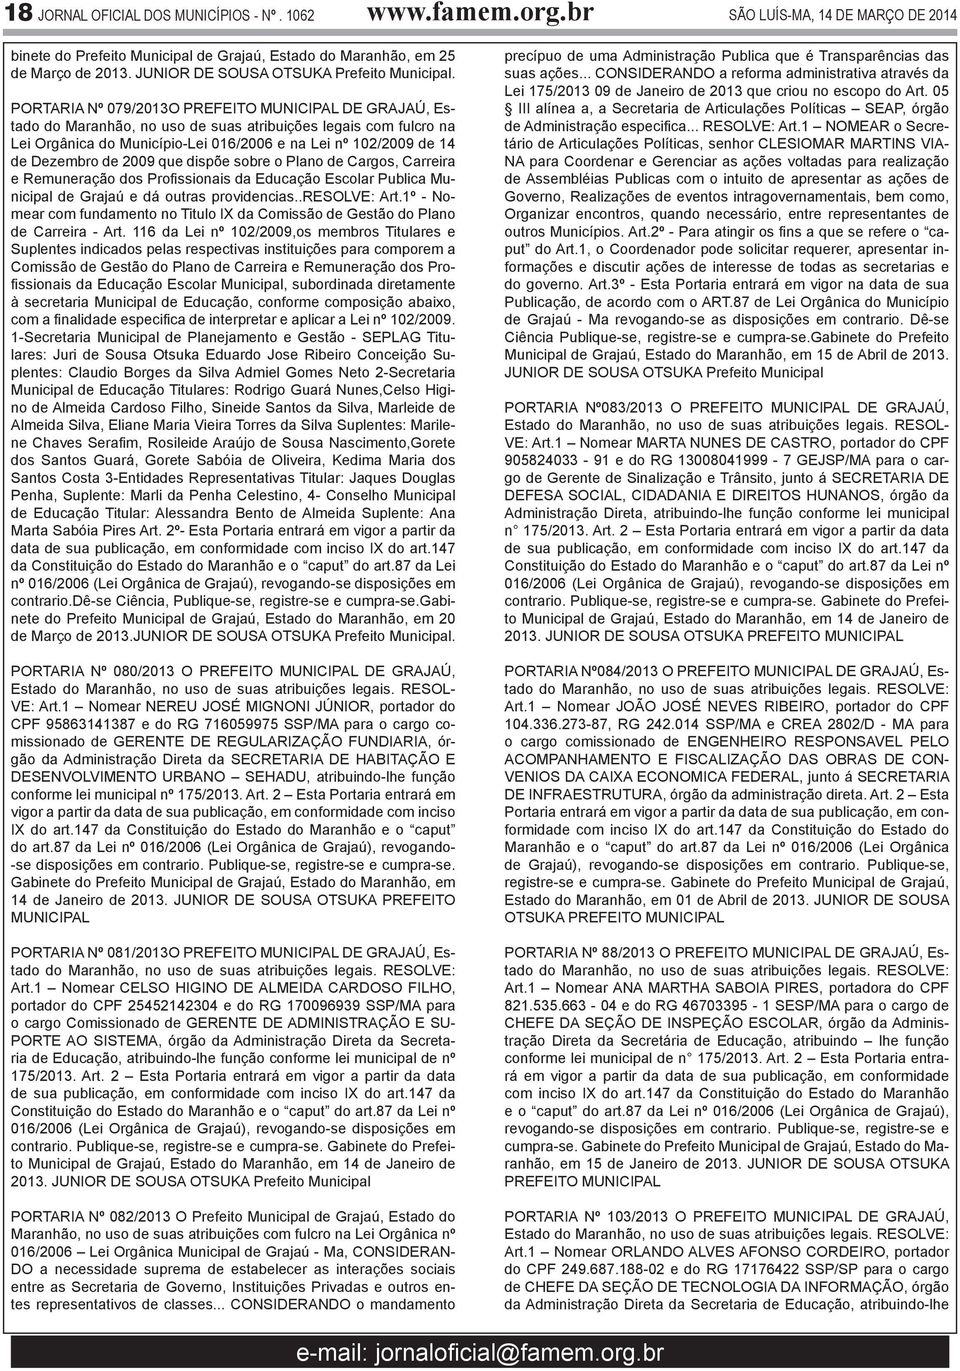 PORTARIA Nº 079/2013O PREFEITO MUNICIPAL DE GRAJAÚ, Estado do Maranhão, no uso de suas atribuições legais com fulcro na Lei Orgânica do Município-Lei 016/2006 e na Lei nº 102/2009 de 14 de Dezembro